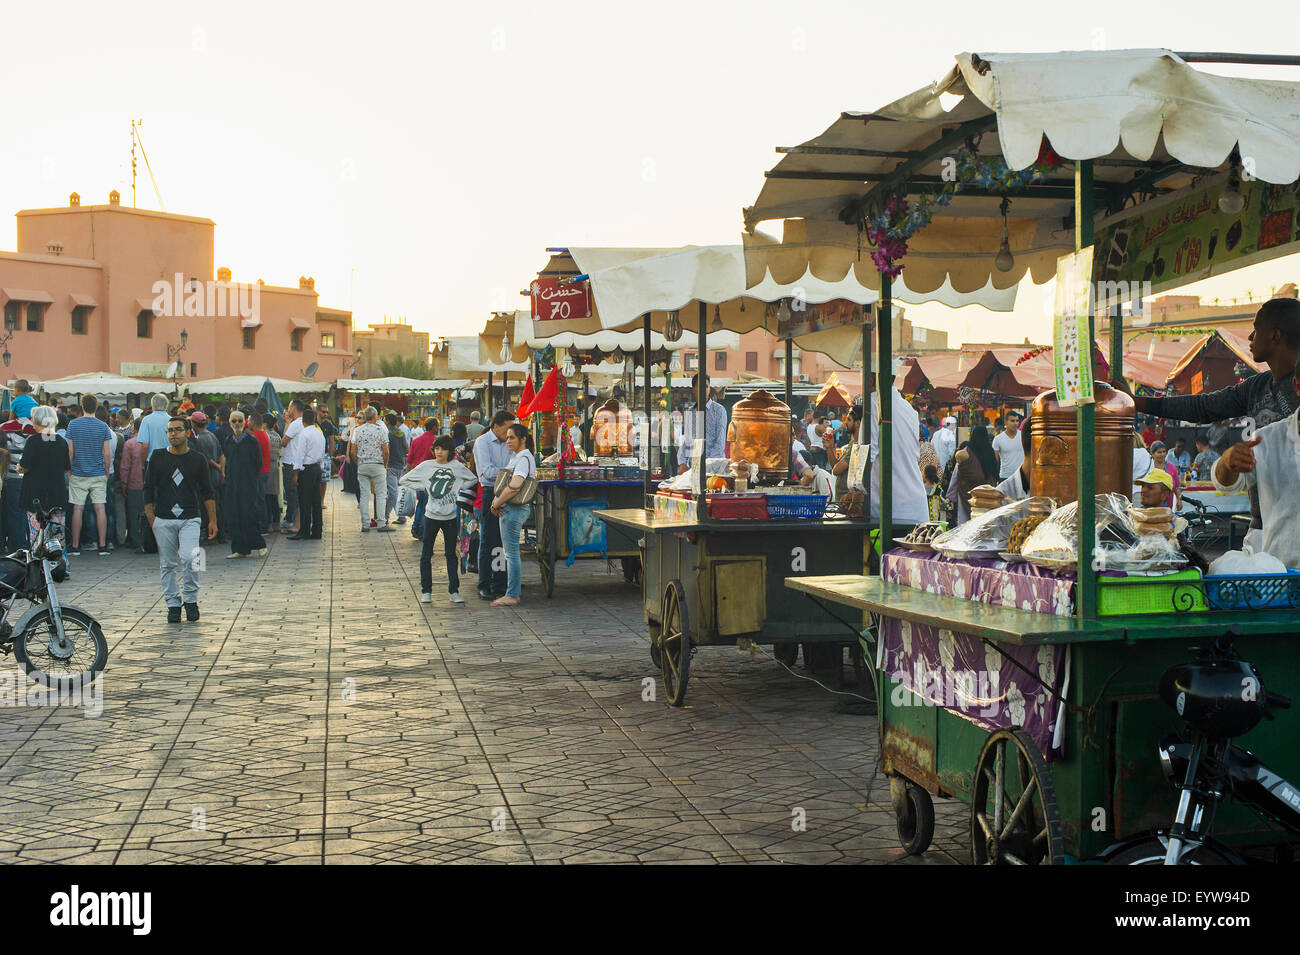 Les gens et d'échoppes vendant de la nourriture, Place Djemaa el Fna, UNESCO World Heritage site, Marrakech, Maroc Banque D'Images